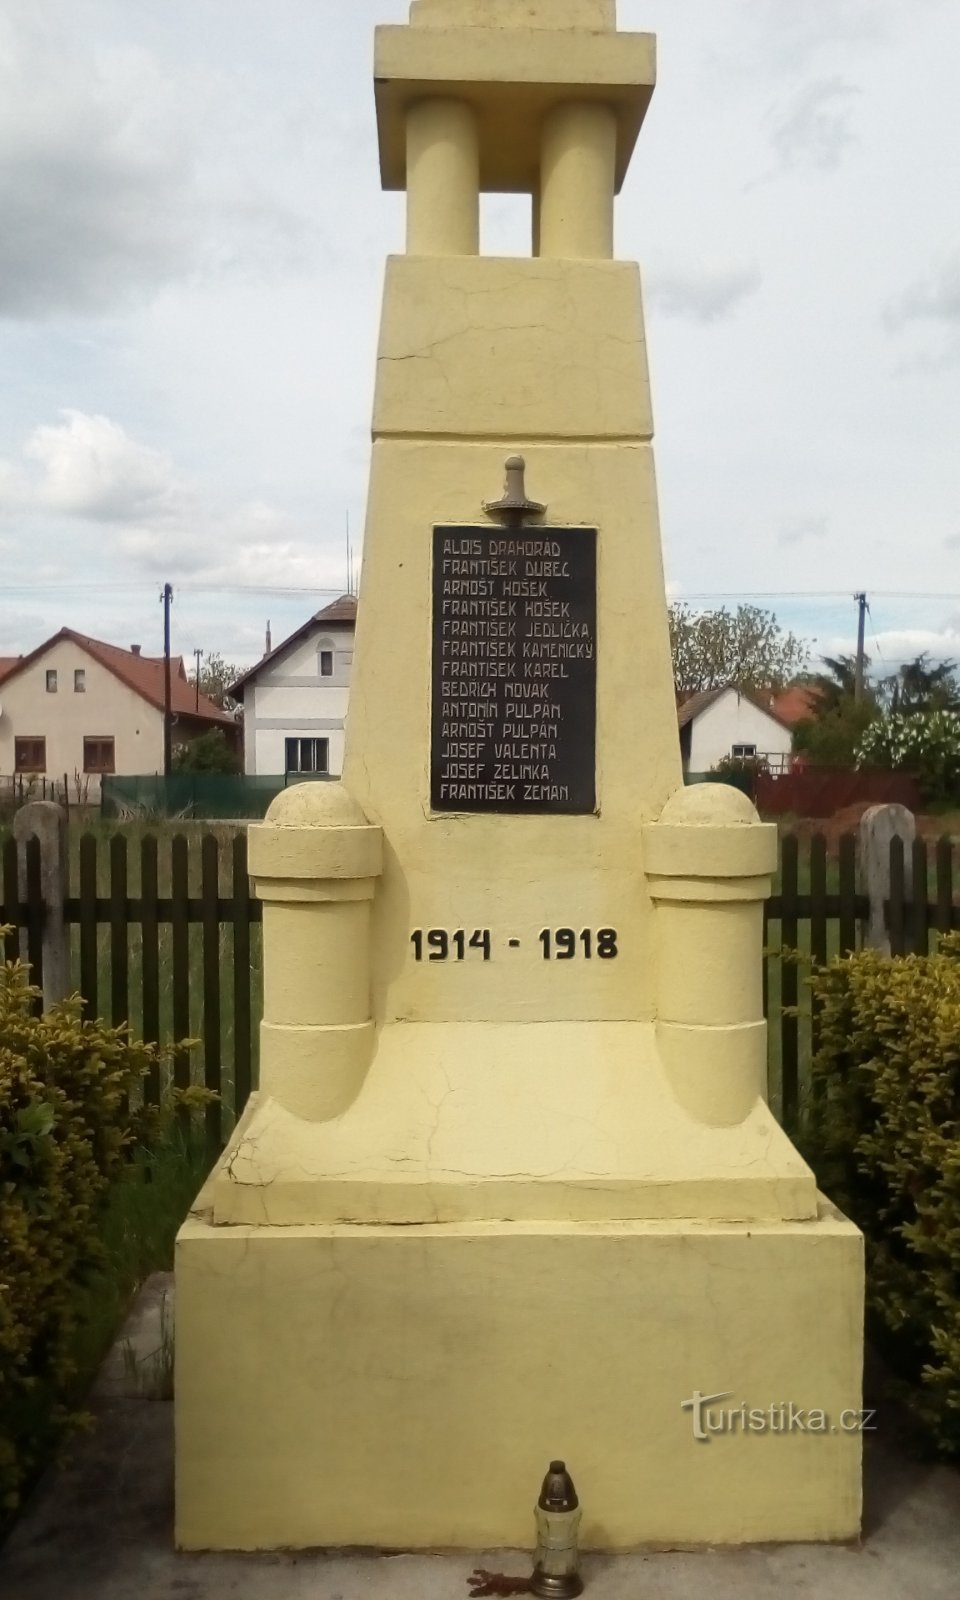 Monumento aos mortos em Kunětice